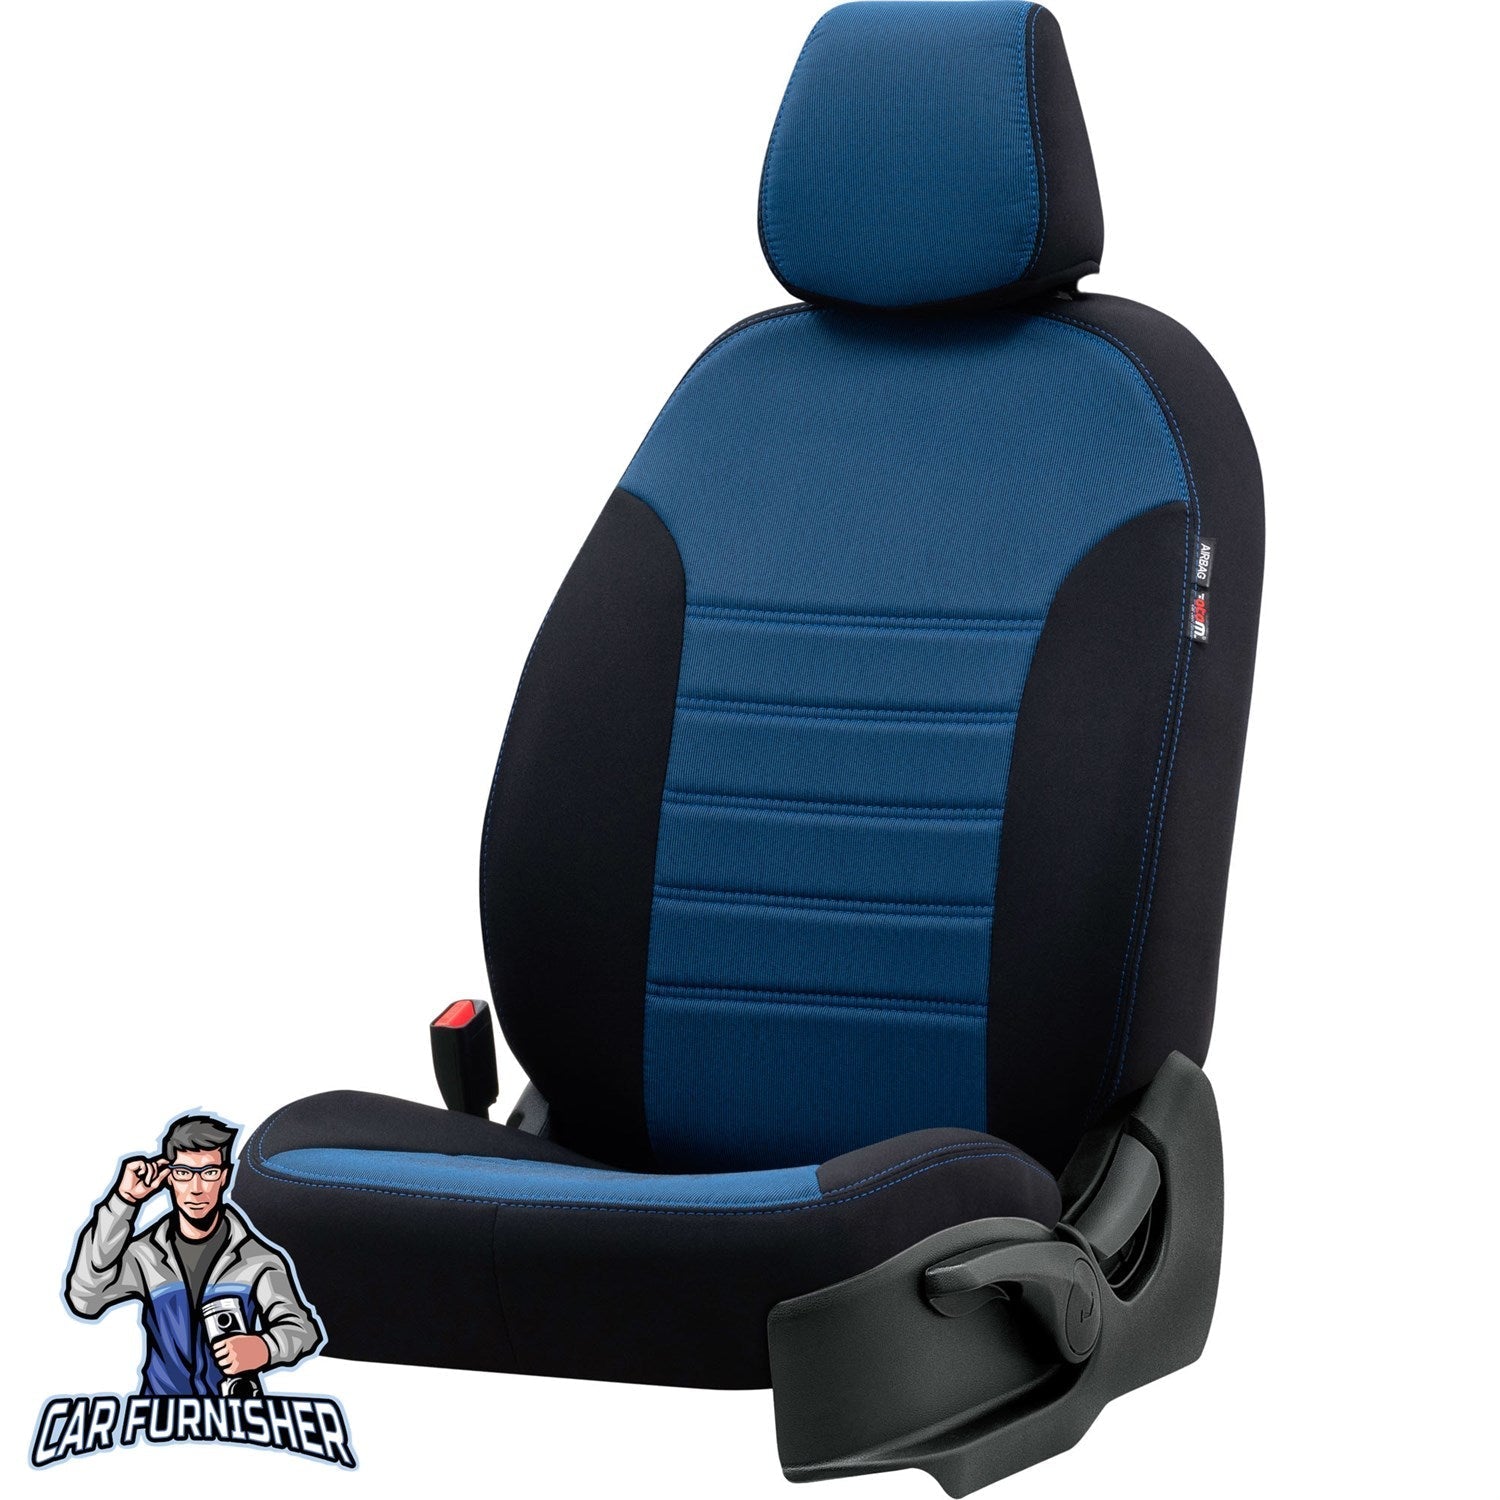 Chevrolet Cruze Seat Covers Original Jacquard Design Blue Jacquard Fabric